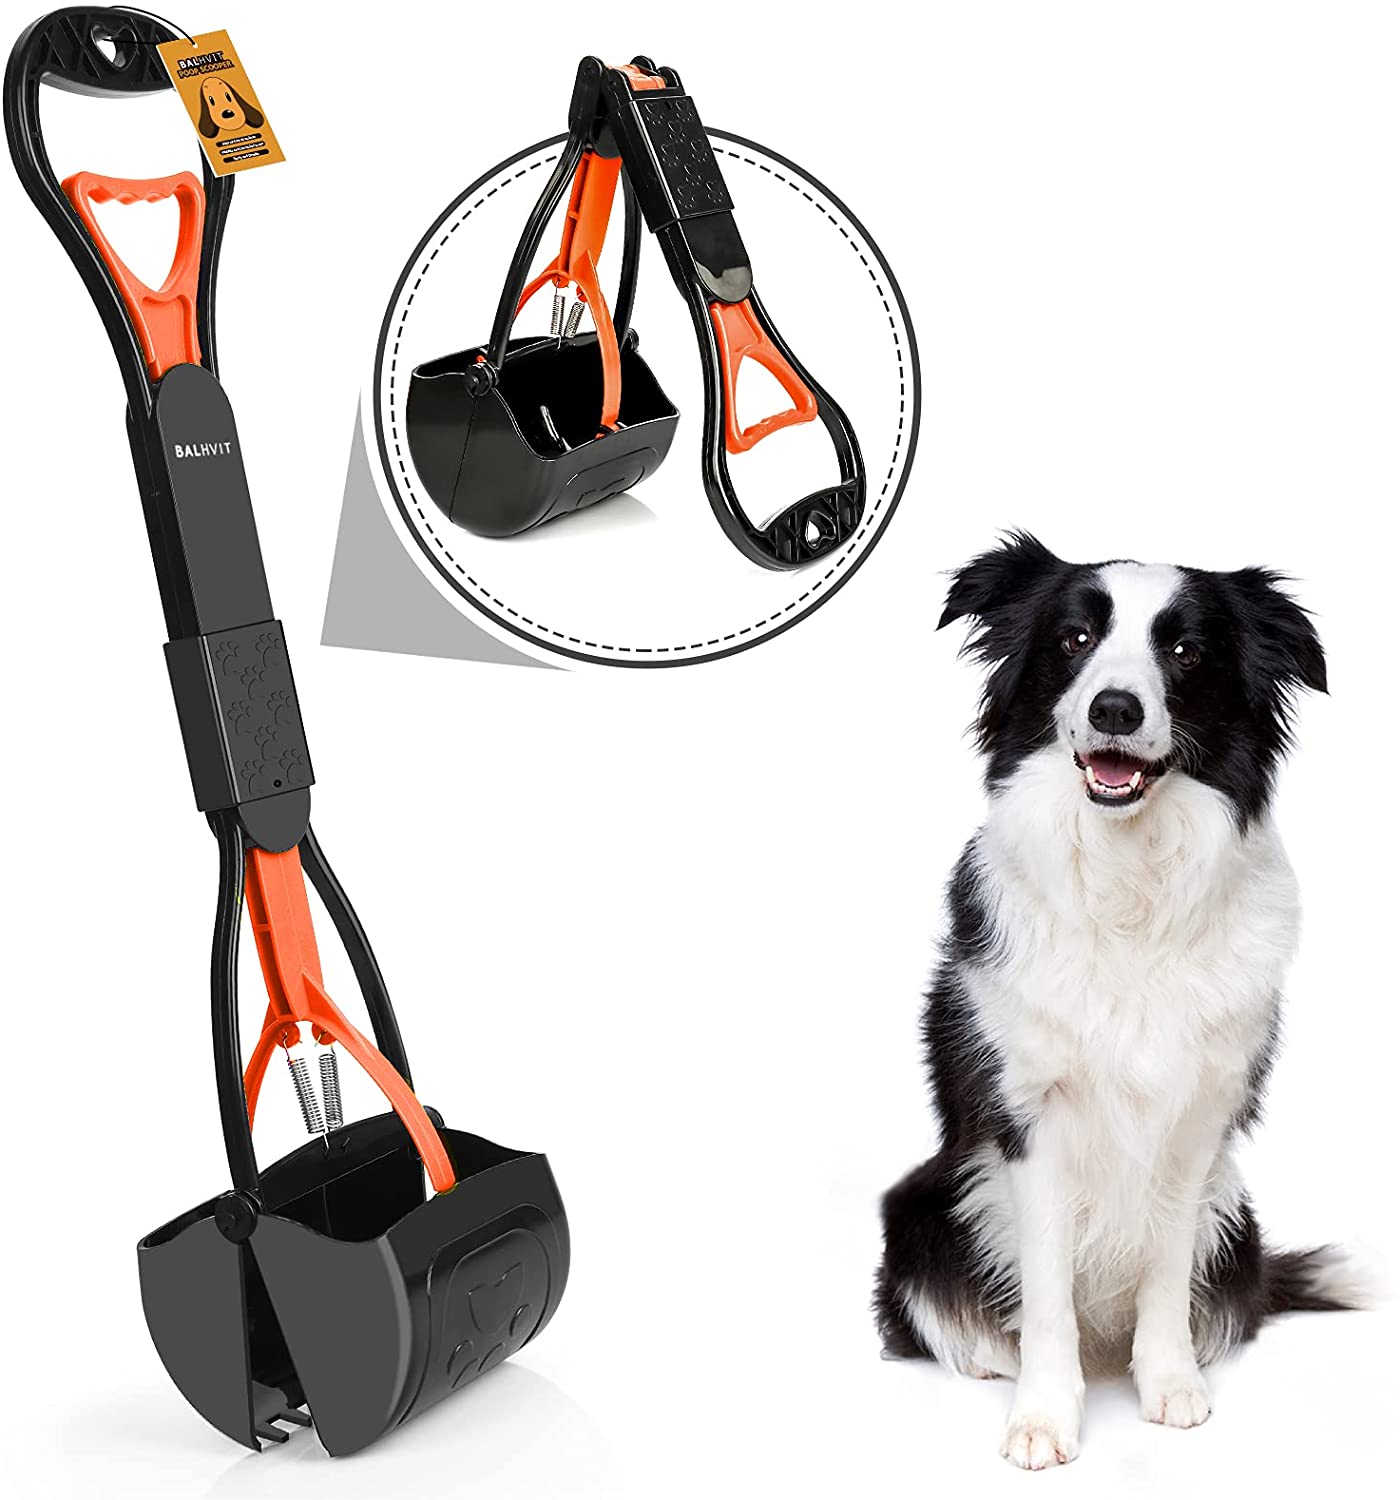 Balhvit-Non-Breakable-Pet-Pooper-Scooper-for-Dogs-2